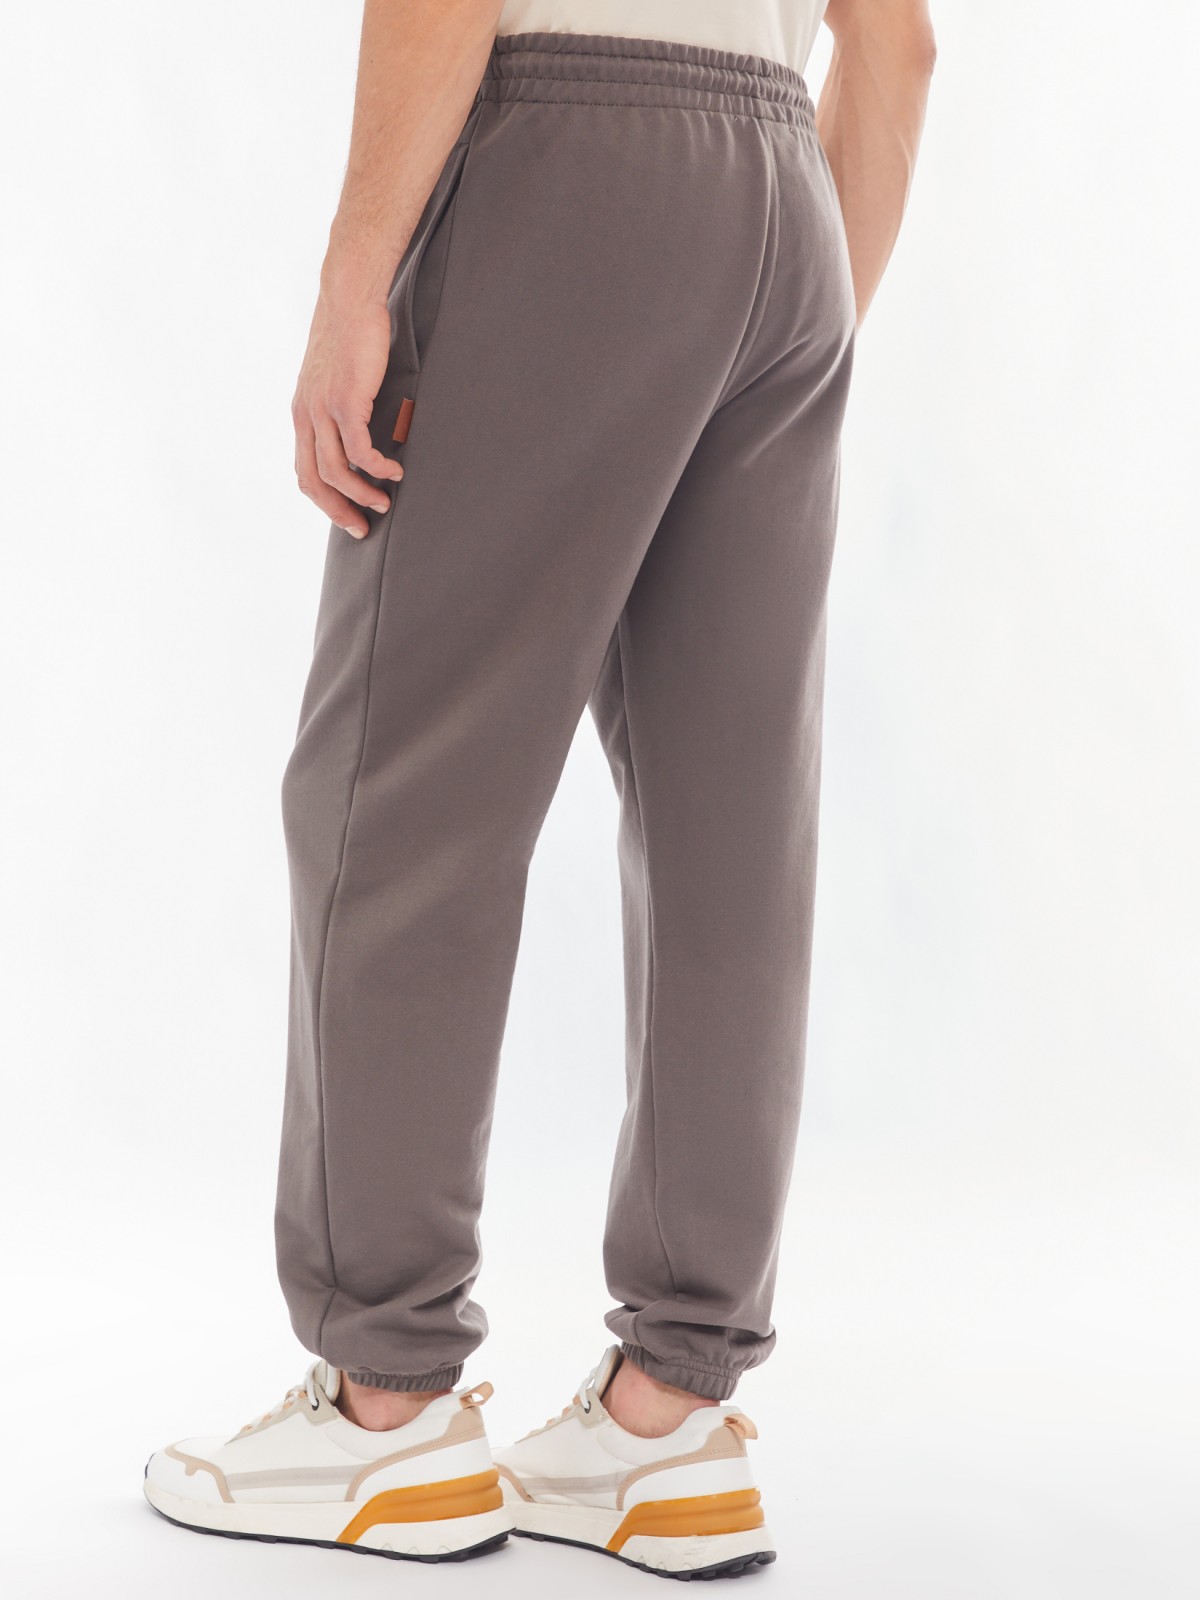 Трикотажные брюки-джоггеры в спортивном стиле zolla 014137660042, цвет серый, размер S - фото 6